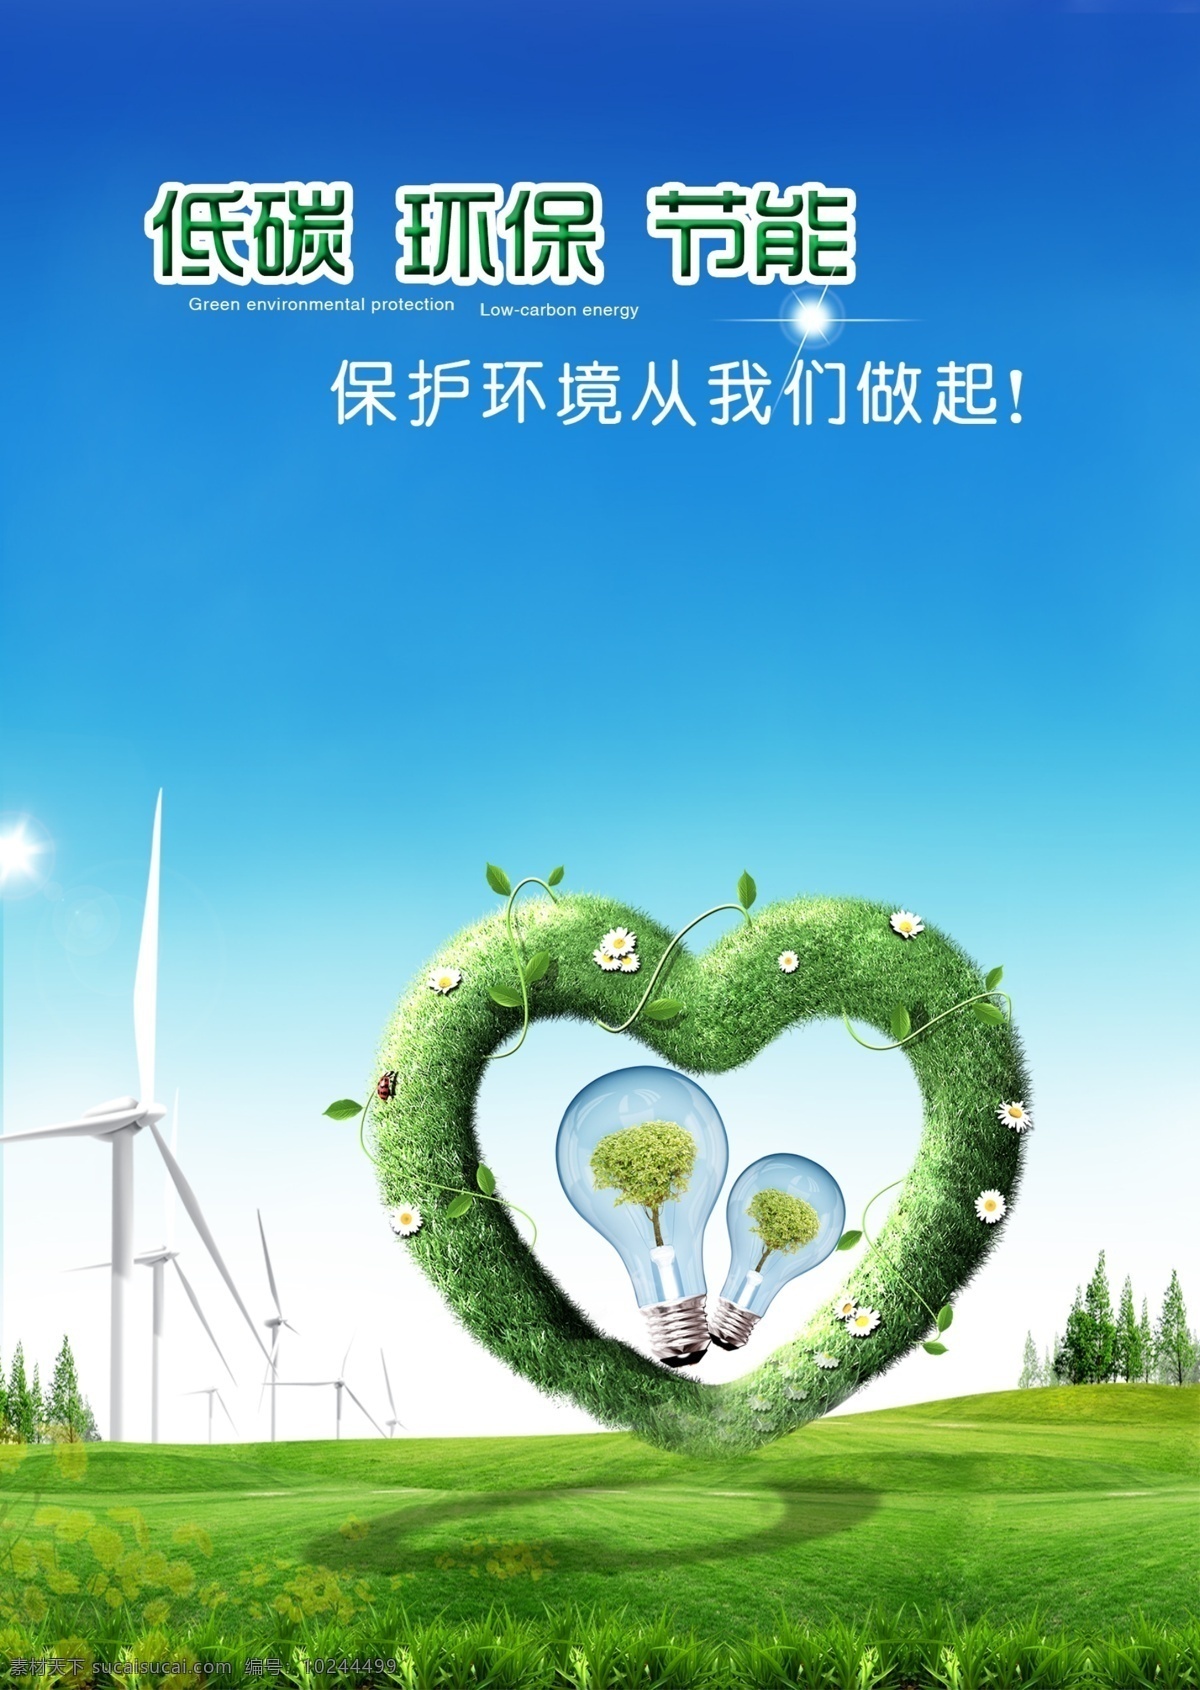 低 碳 生活 节能环保 低碳 环保 节能 绿色 草地 绿色心形 电风车 绿色草皮 灯泡 保护环境 低碳生活 蓝天 天空 分层 环境 节约 绿色环保